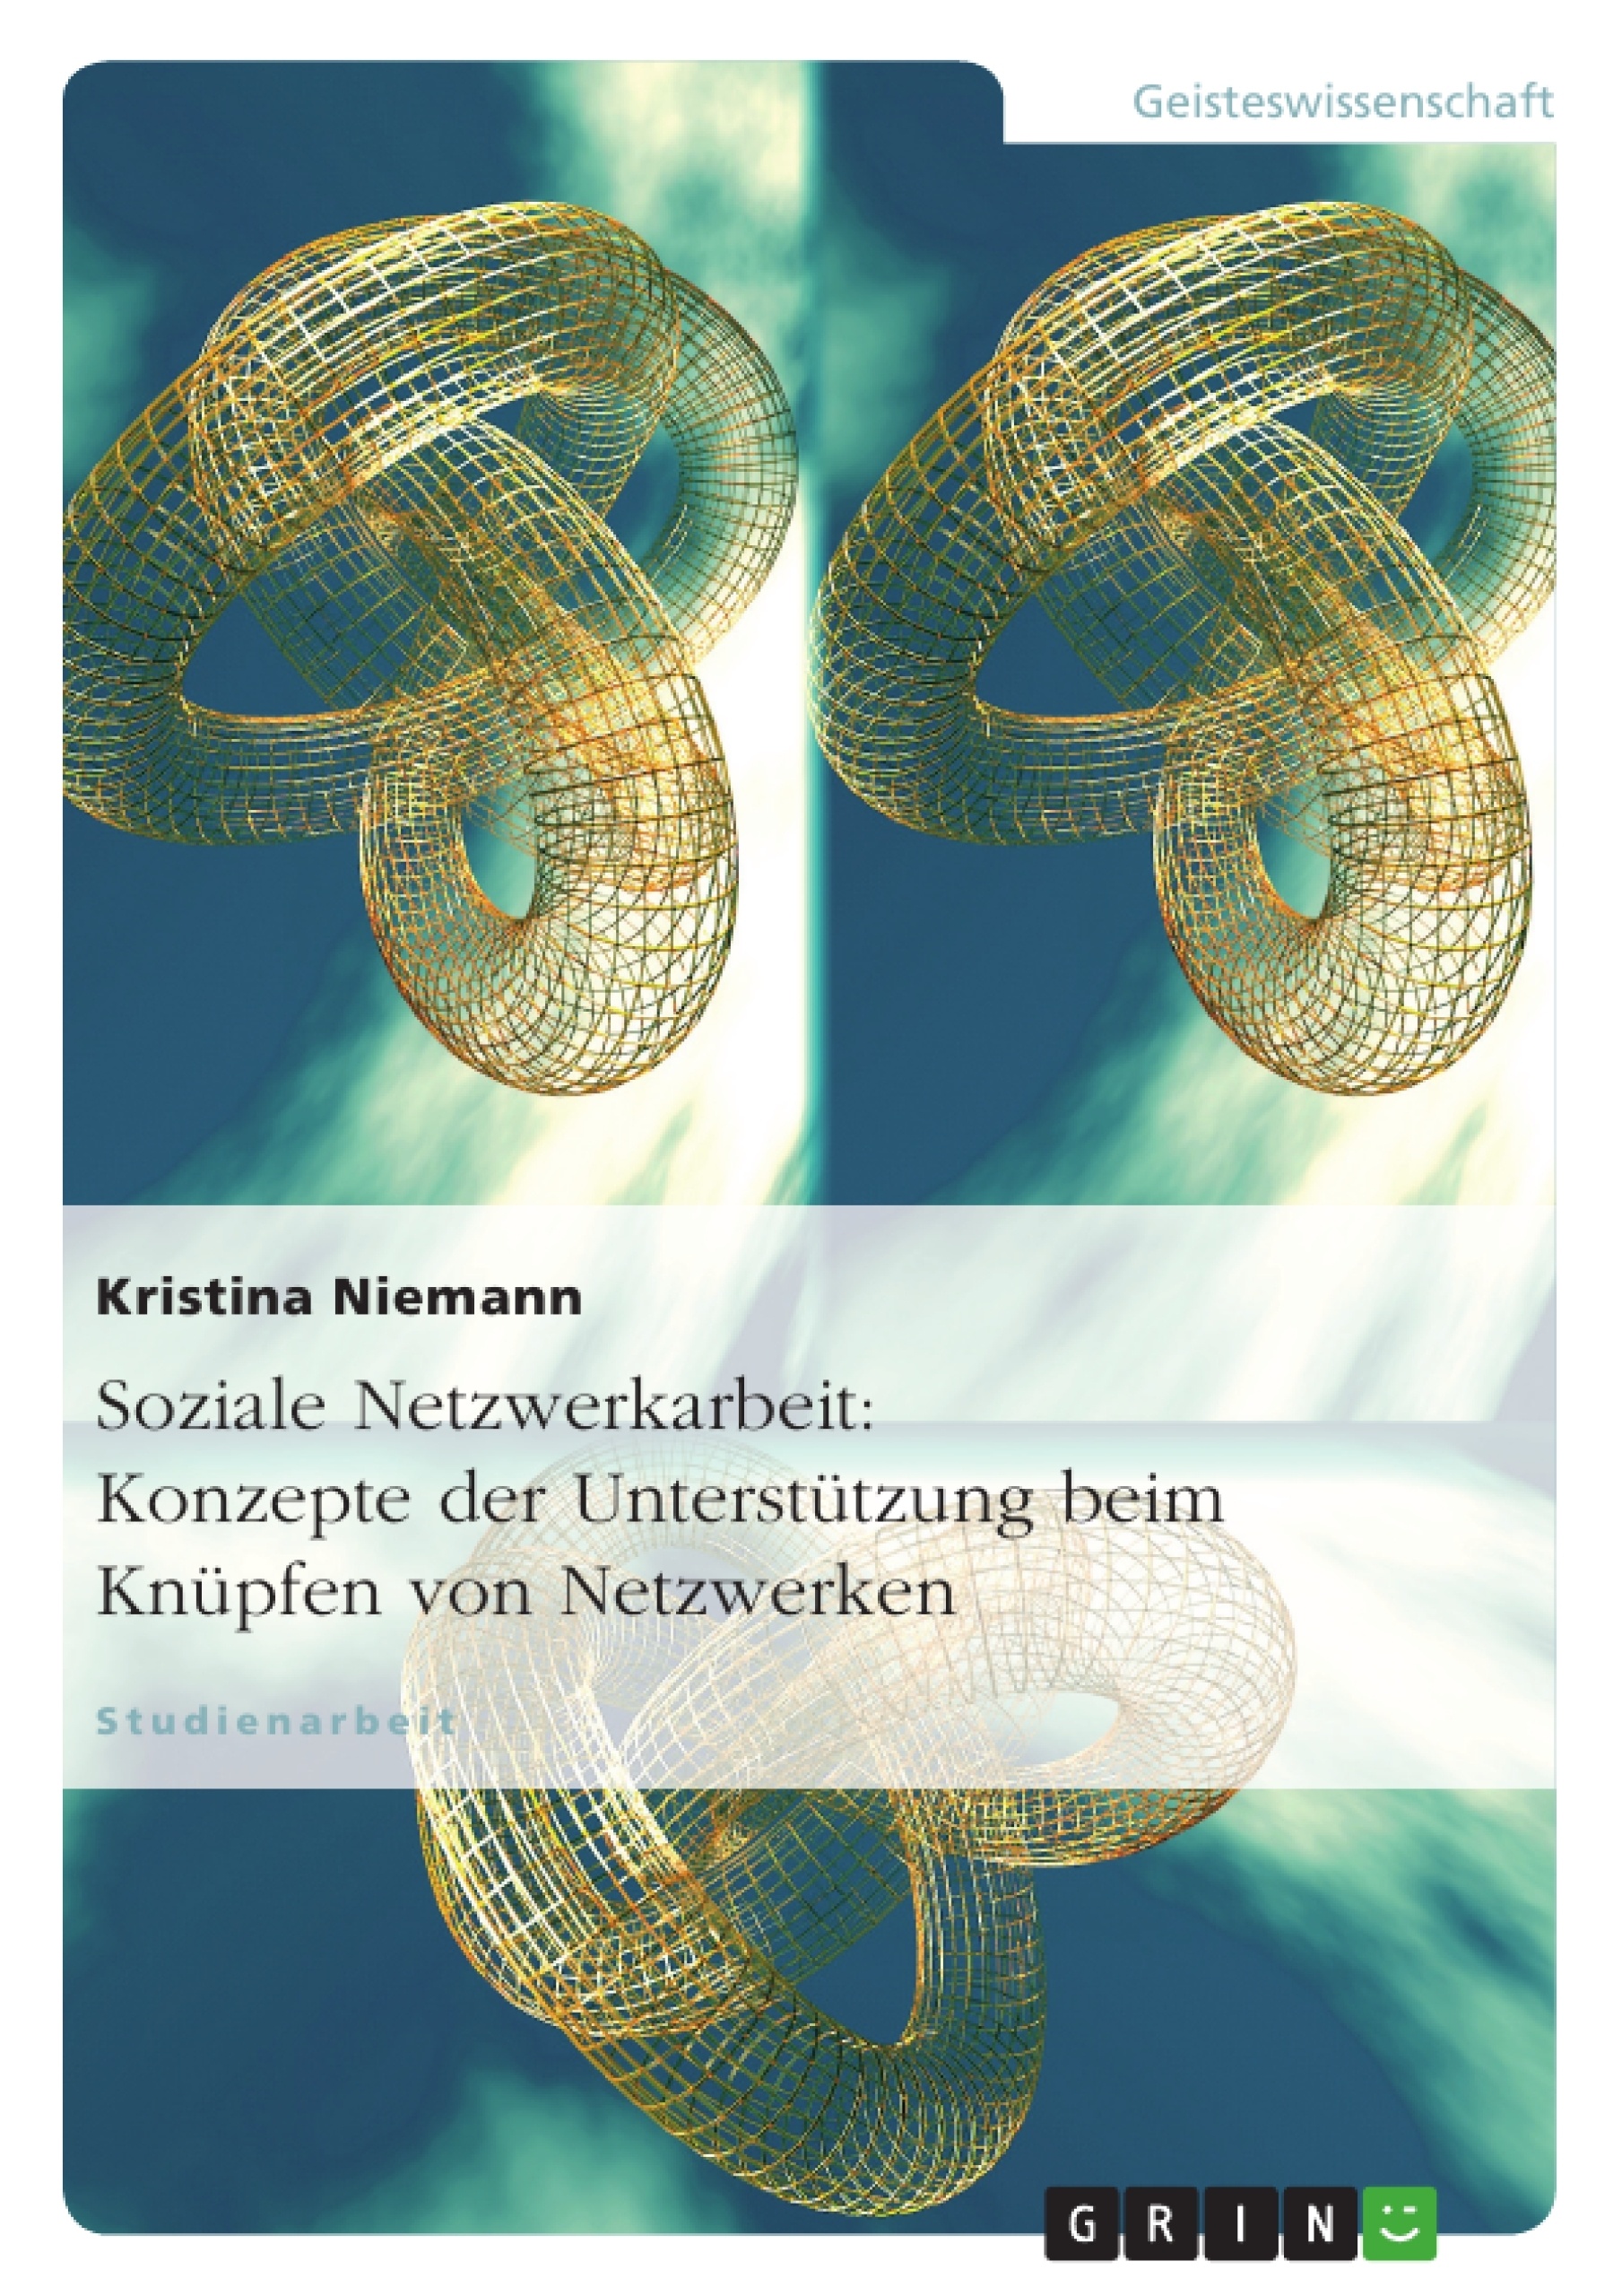 Titel: Soziale Netzwerkarbeit: Konzepte der Unterstützung beim Knüpfen von Netzwerken